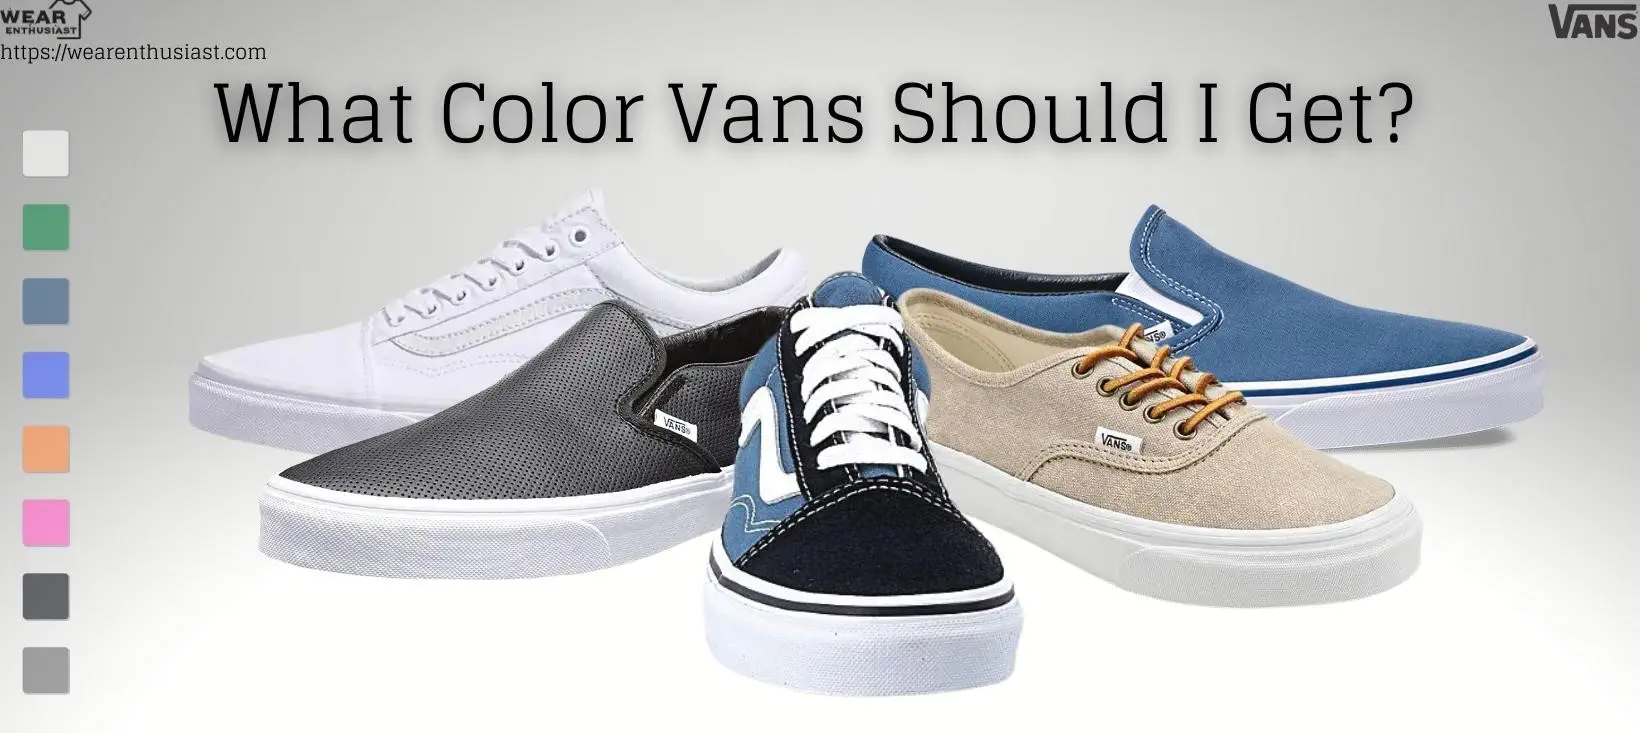 What Color Vans Should I Get?